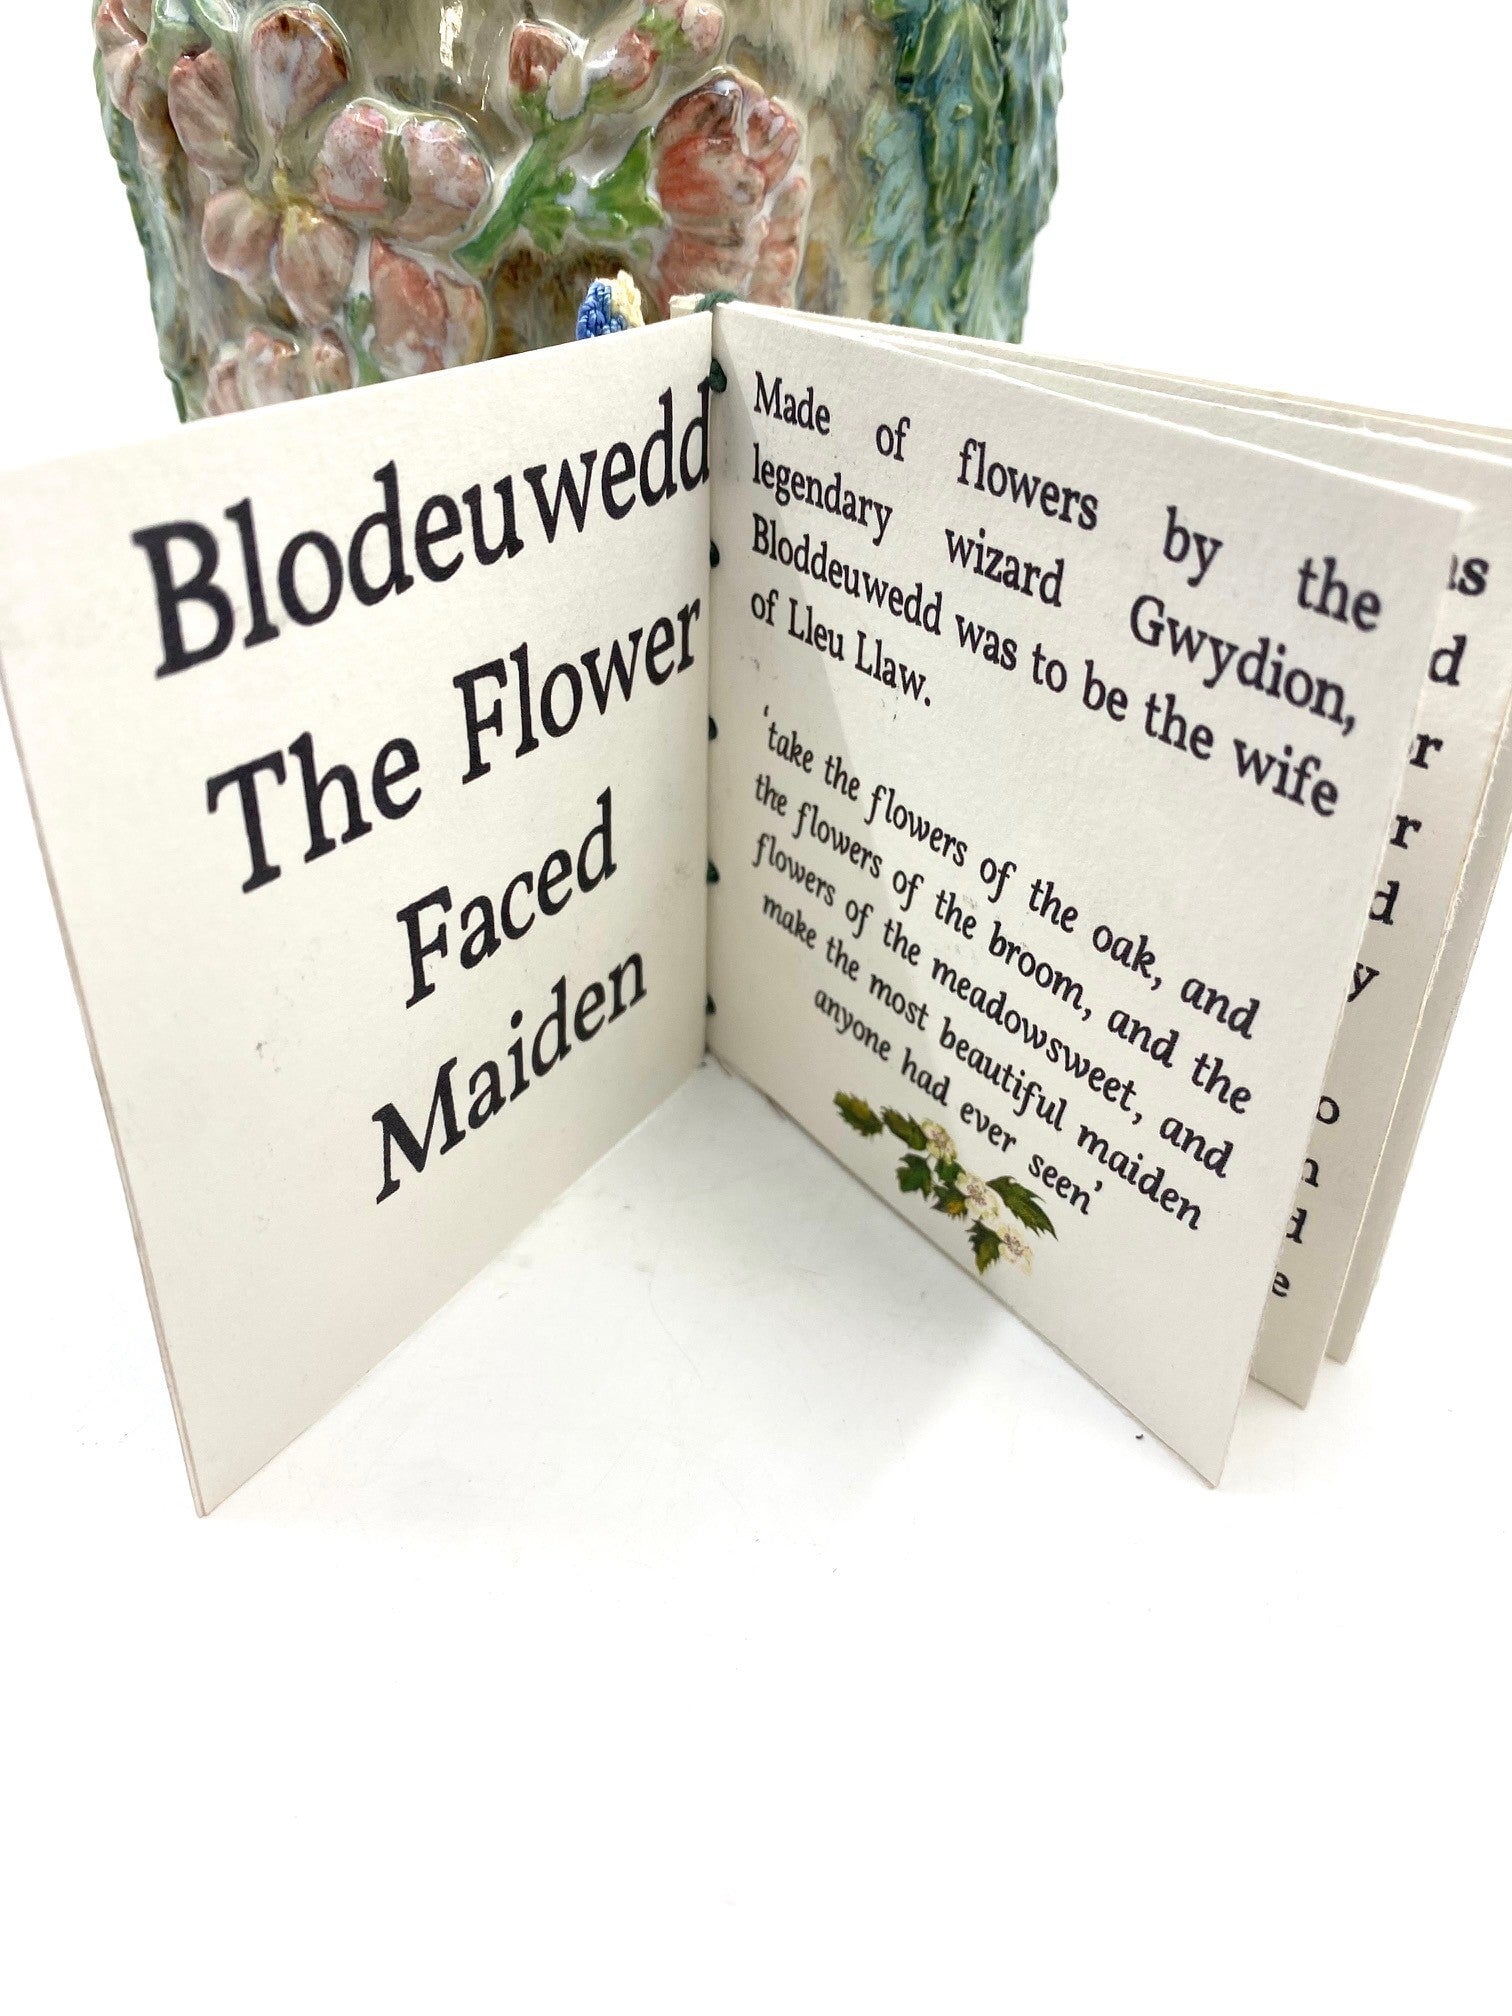 Blodeuwedd with Book